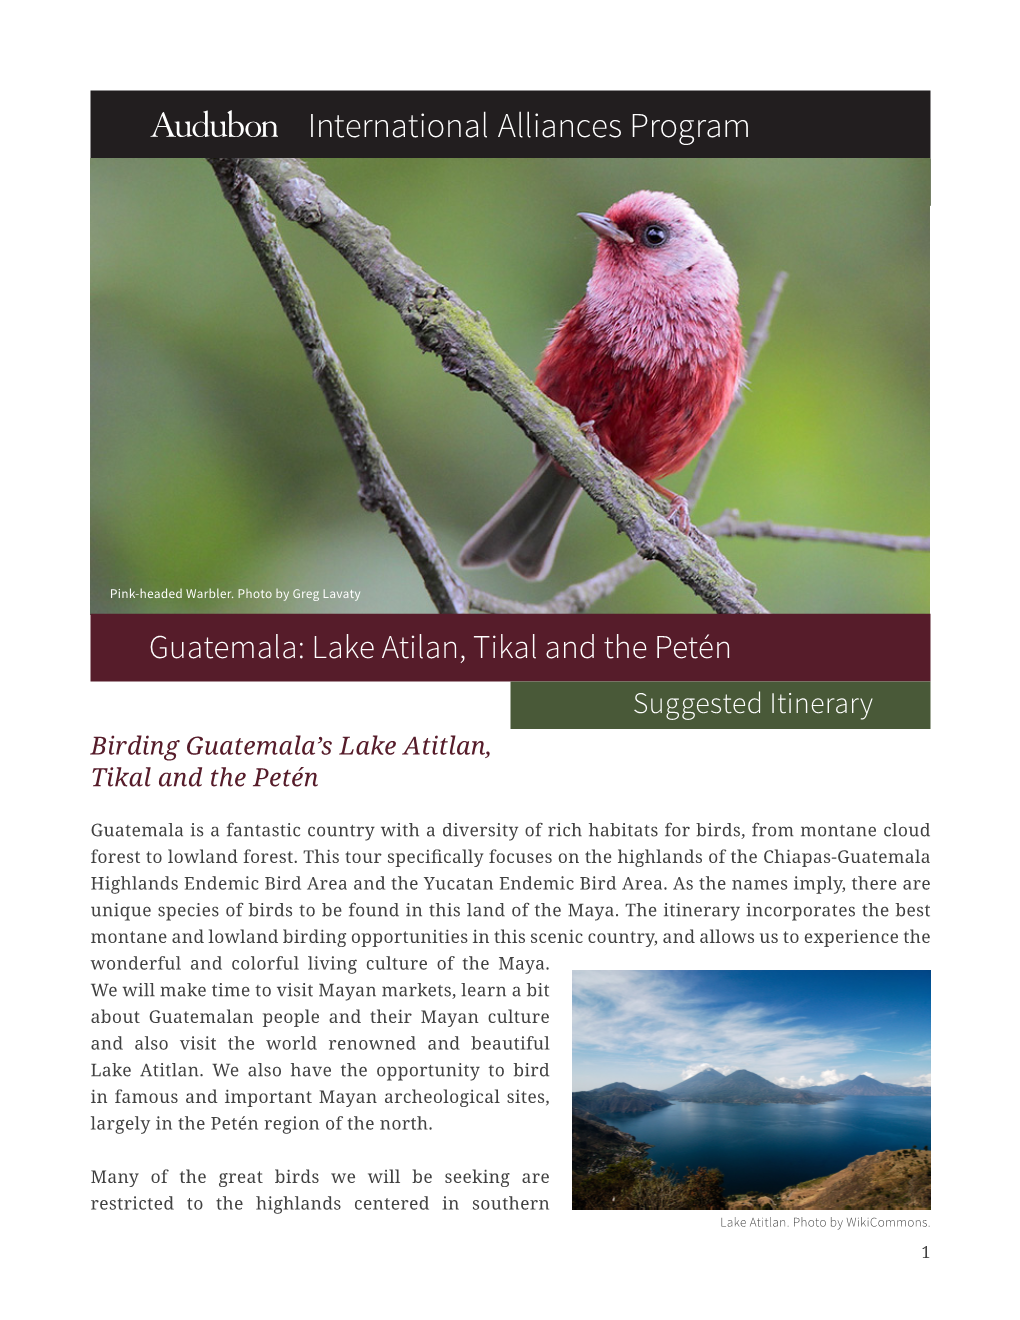 Birding Guatemala's Lake Atitlan, Tikal and the Petén